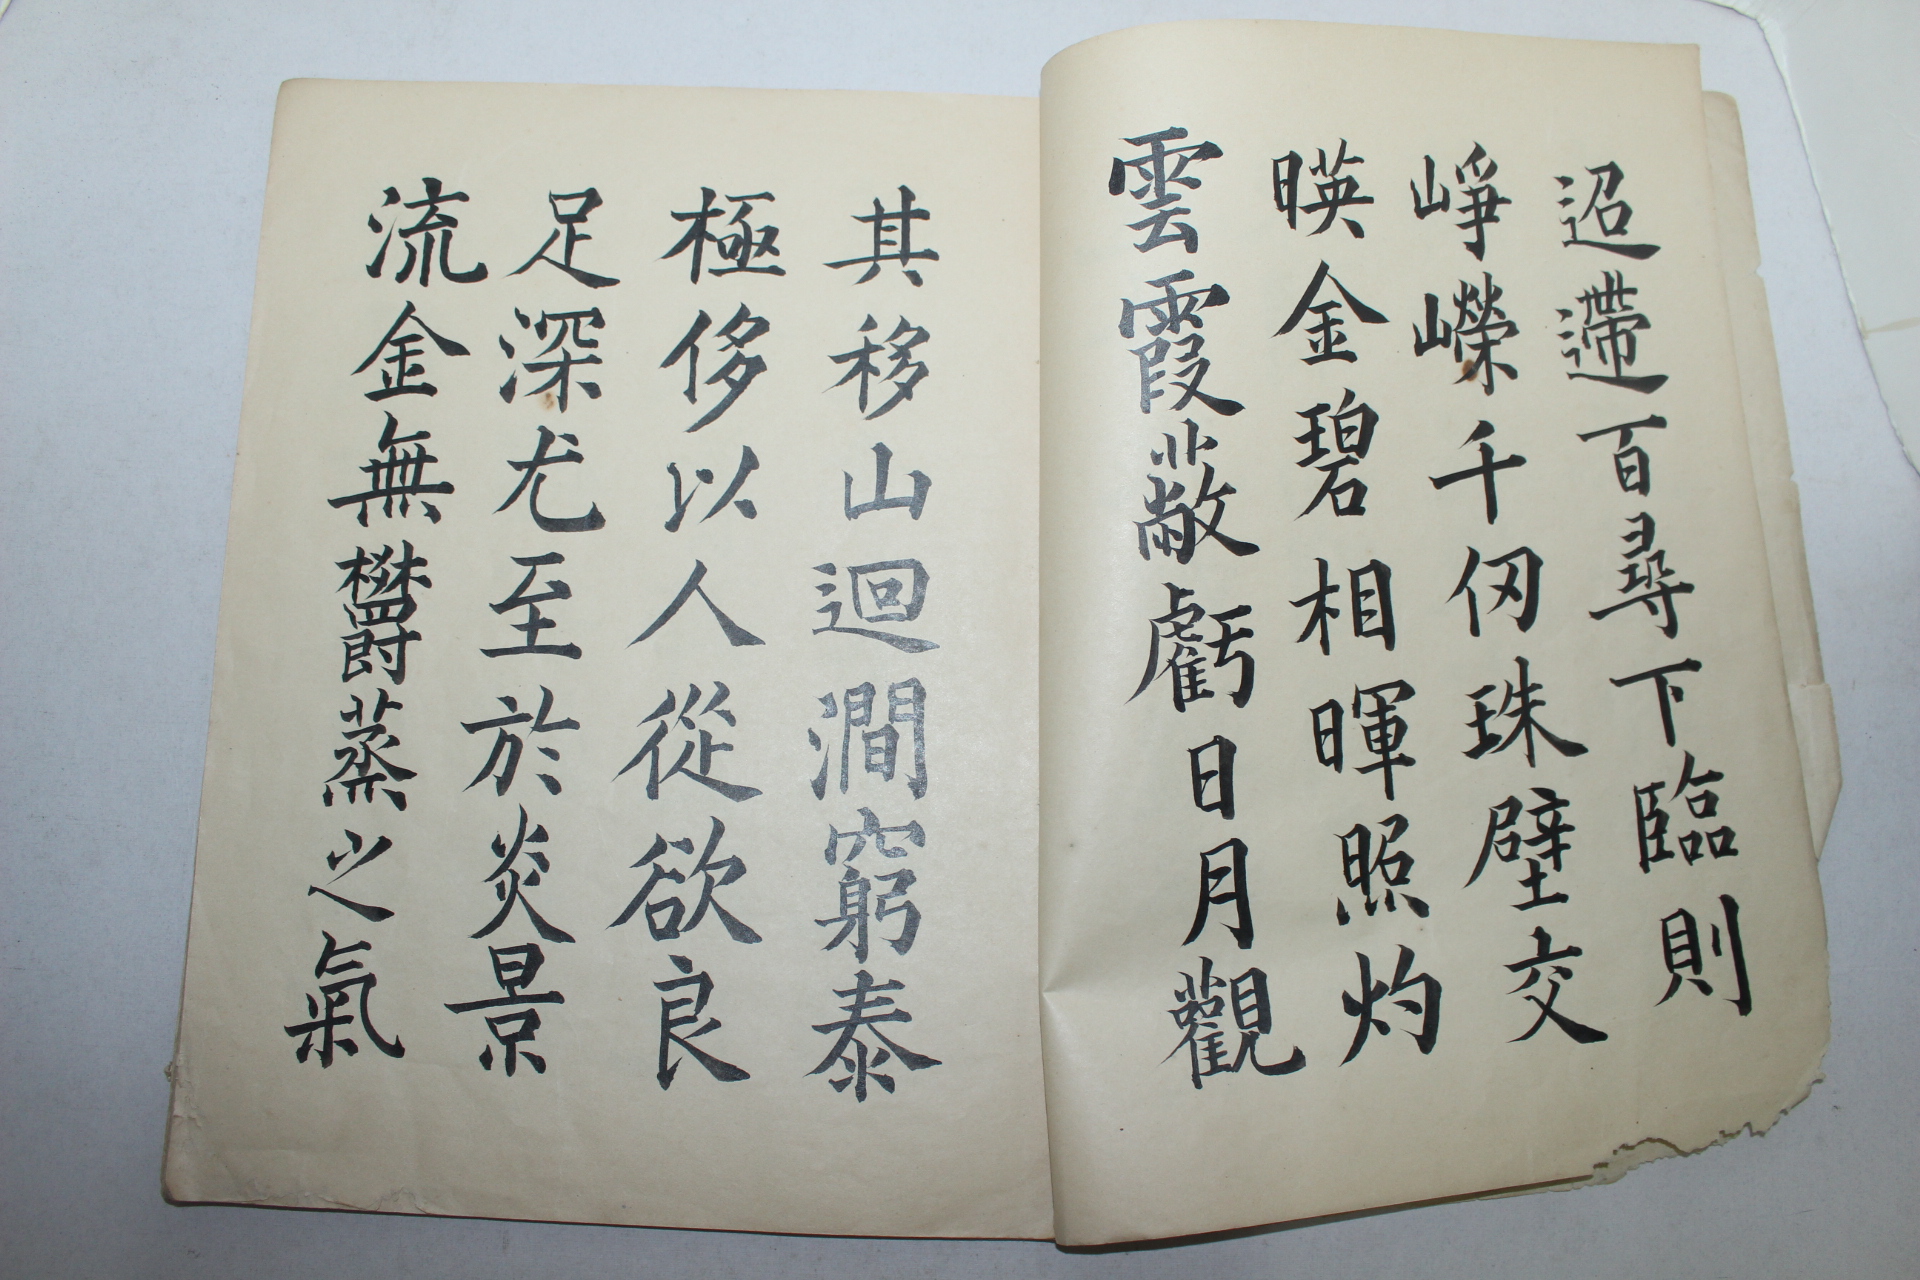 1882년(광서임오년) 운석(雲石)墨 구성궁례천명(九成宮醴泉銘) 1책